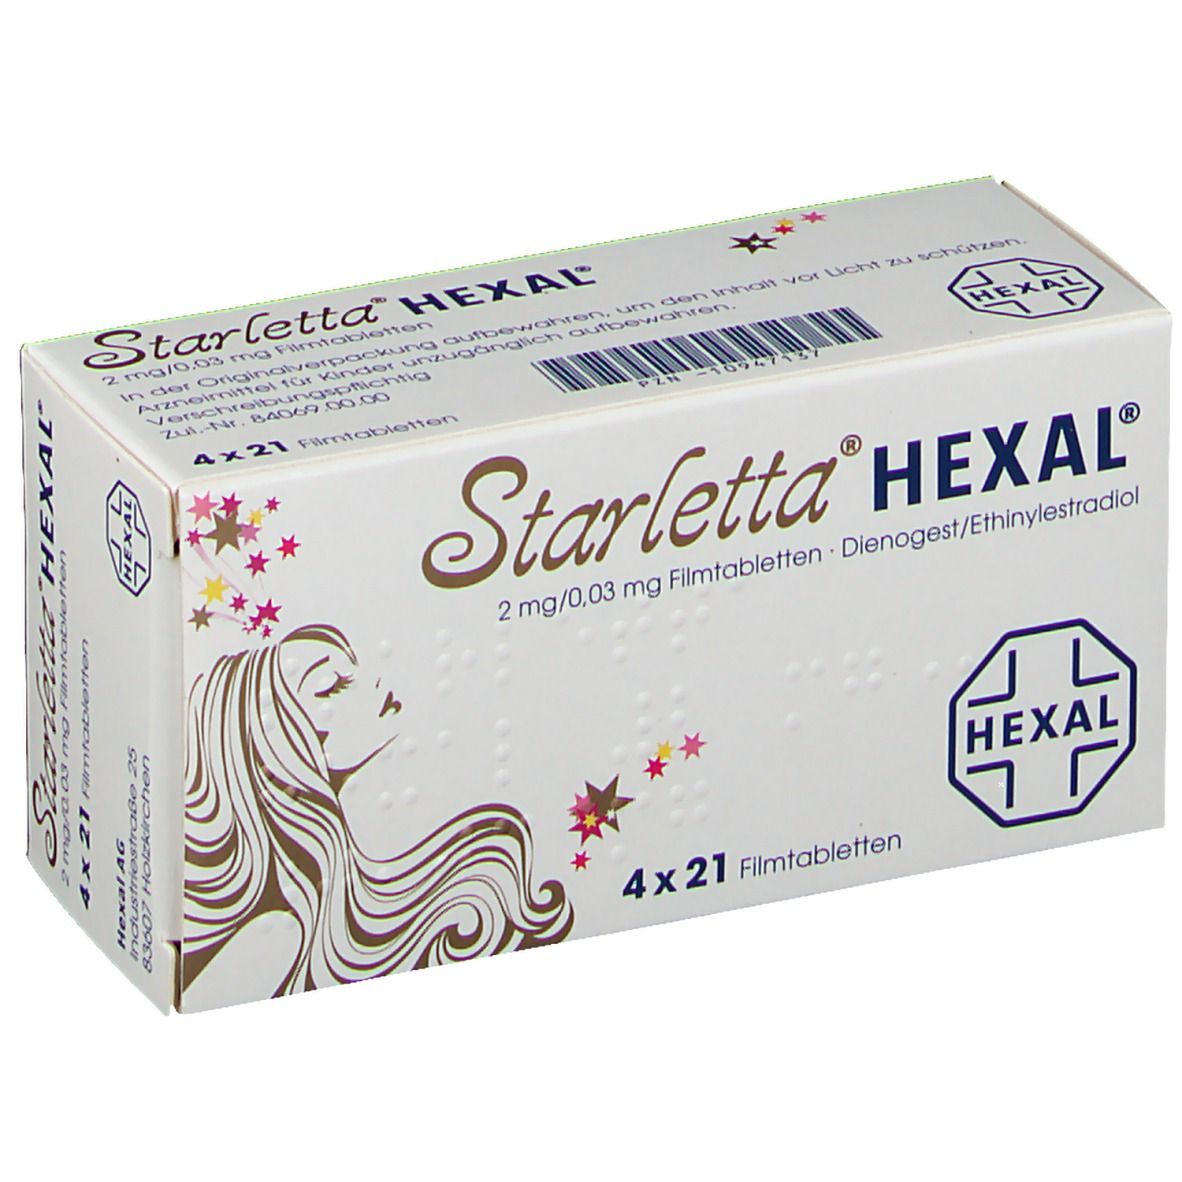 Starletta® HEXAL® 2 mg/0,03 mg